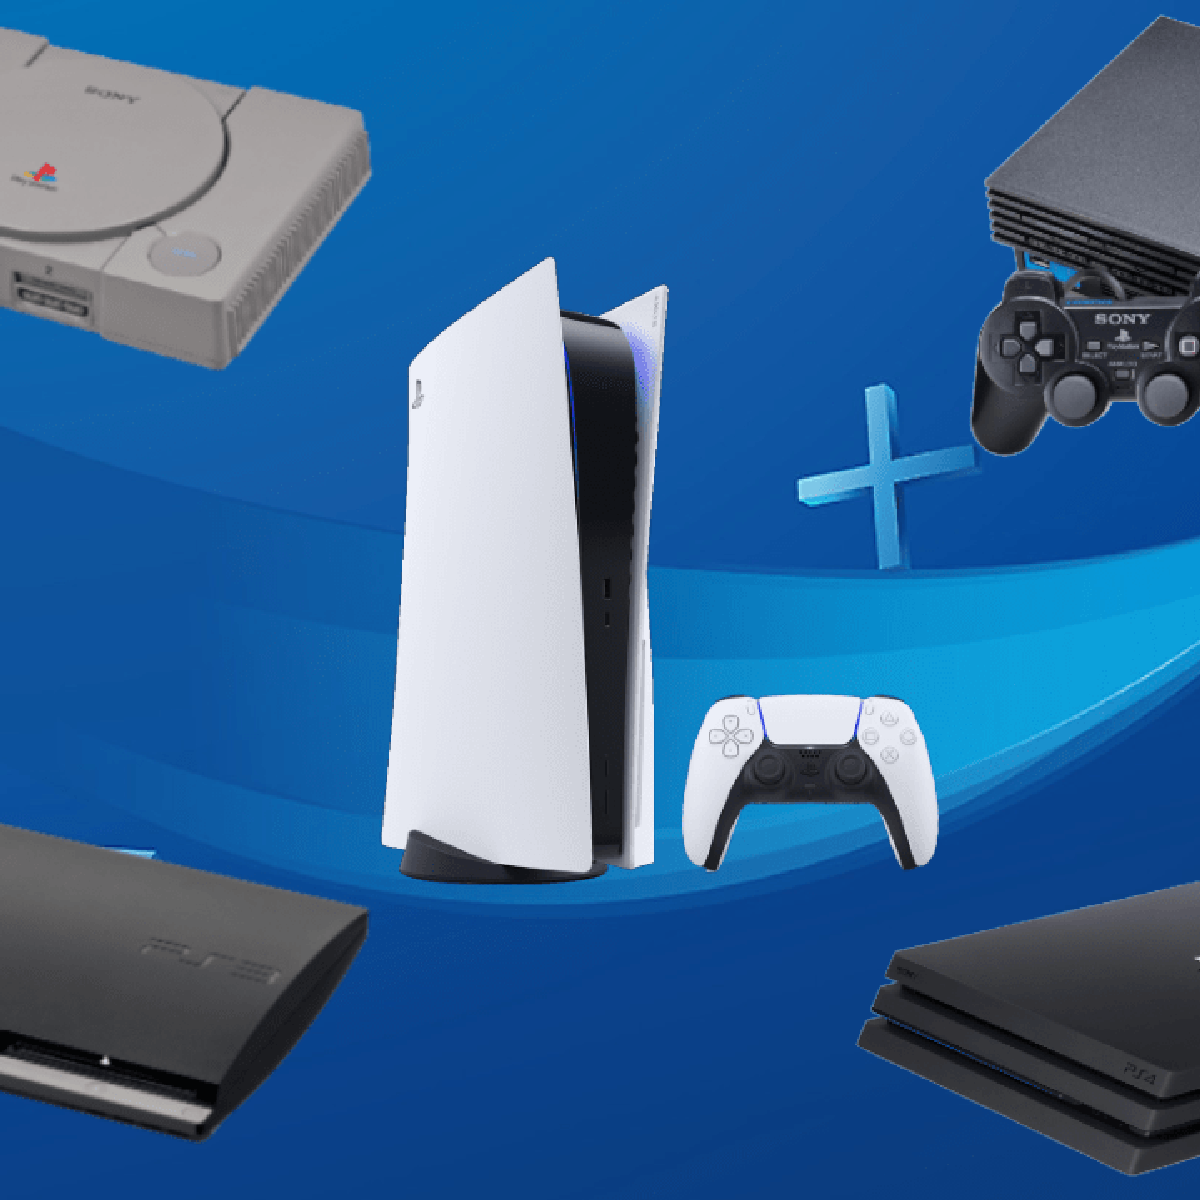 Conheça 5 ótimos Jogos de Tiro para PlayStation 3 lançados em 2010